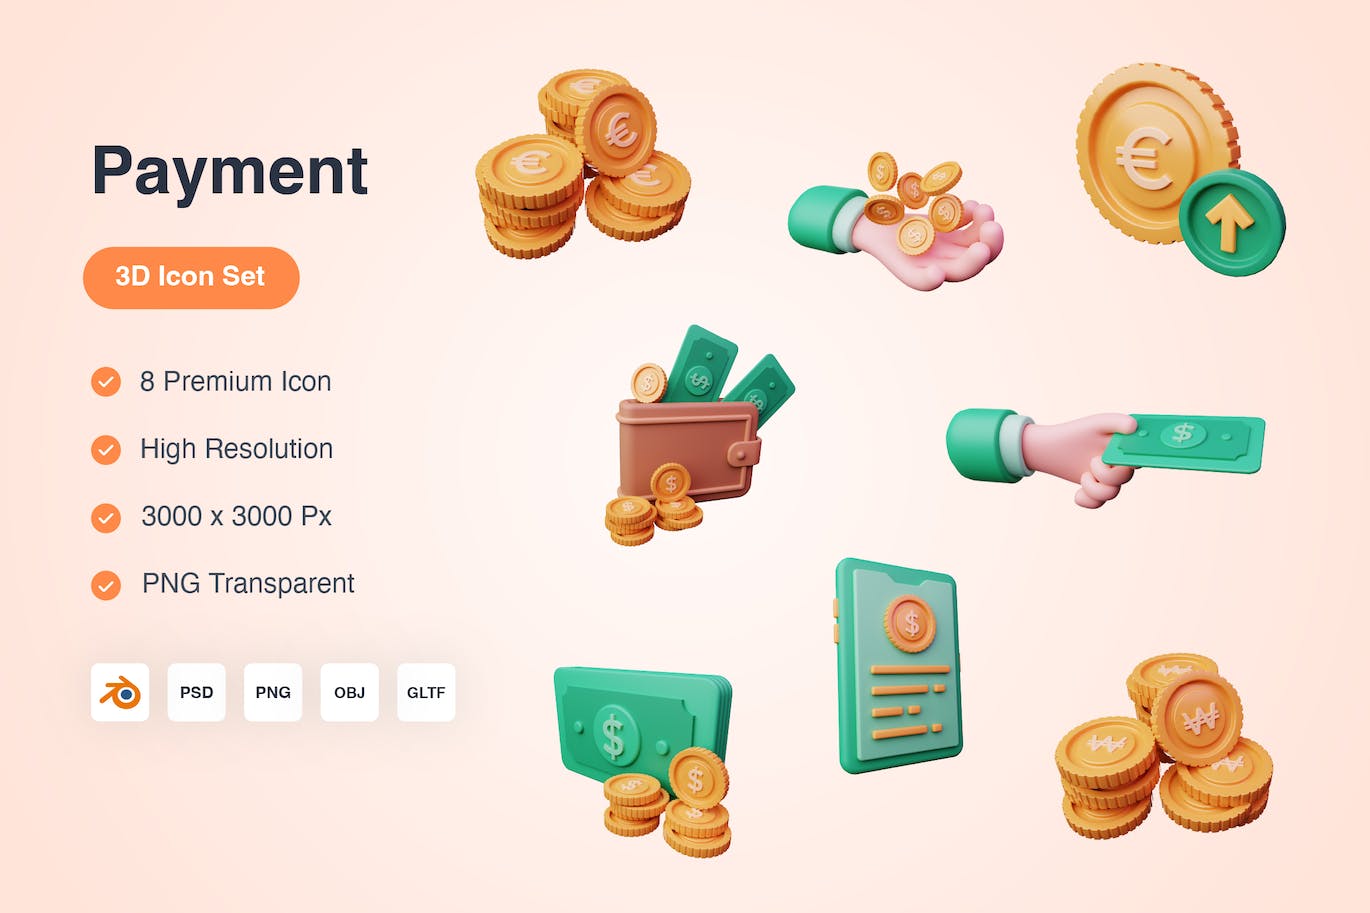 付款支付主题3D图标模型素材下载 Payment 3D Icons